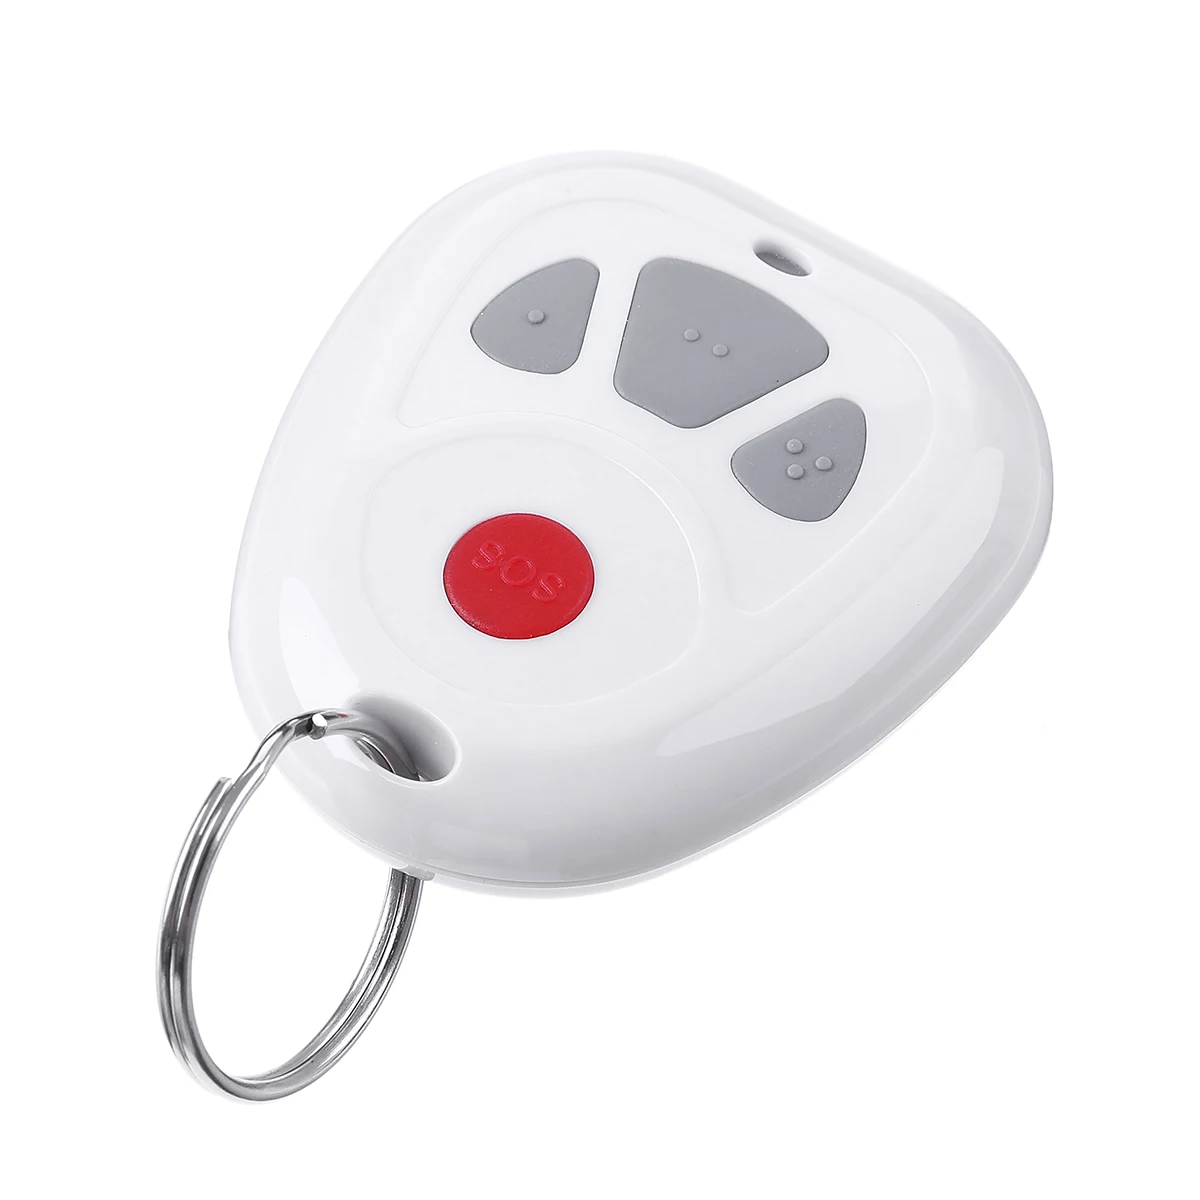 4 клавиши Z Wave Smart SOS Кнопка тревоги беспроводное устройство безопасности пульт дистанционного управления SOS кнопка аварийного вызова датчик домашней автоматизации